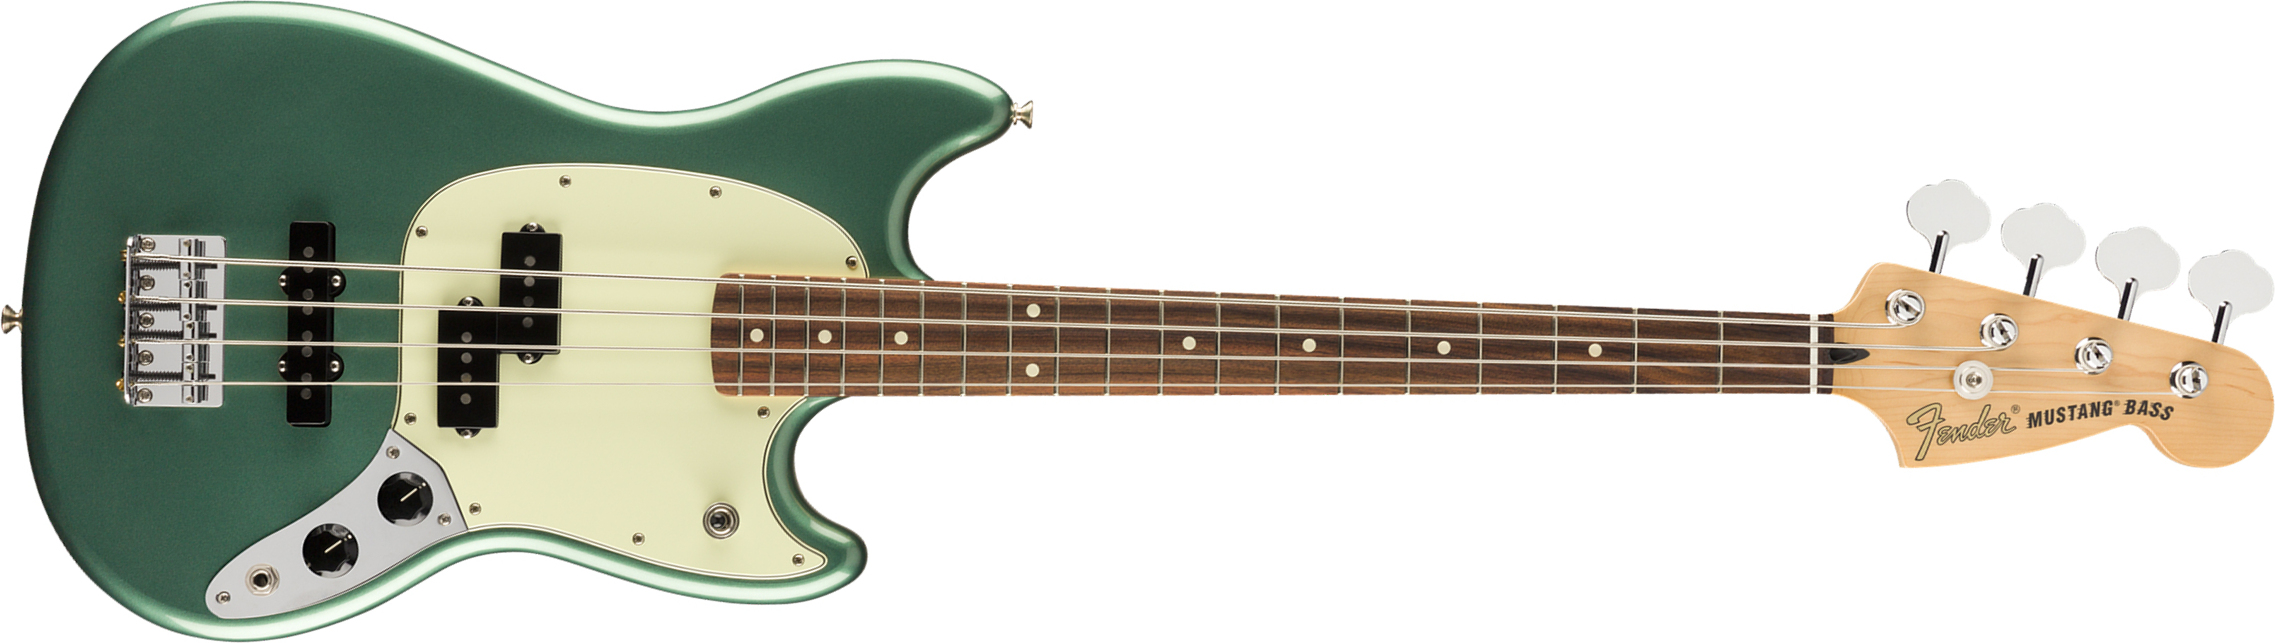 Fender Mustang Bass Pj Player Ltd Mex Pf - Sherwood Green Metallic - E-Bass für Kinder - Main picture